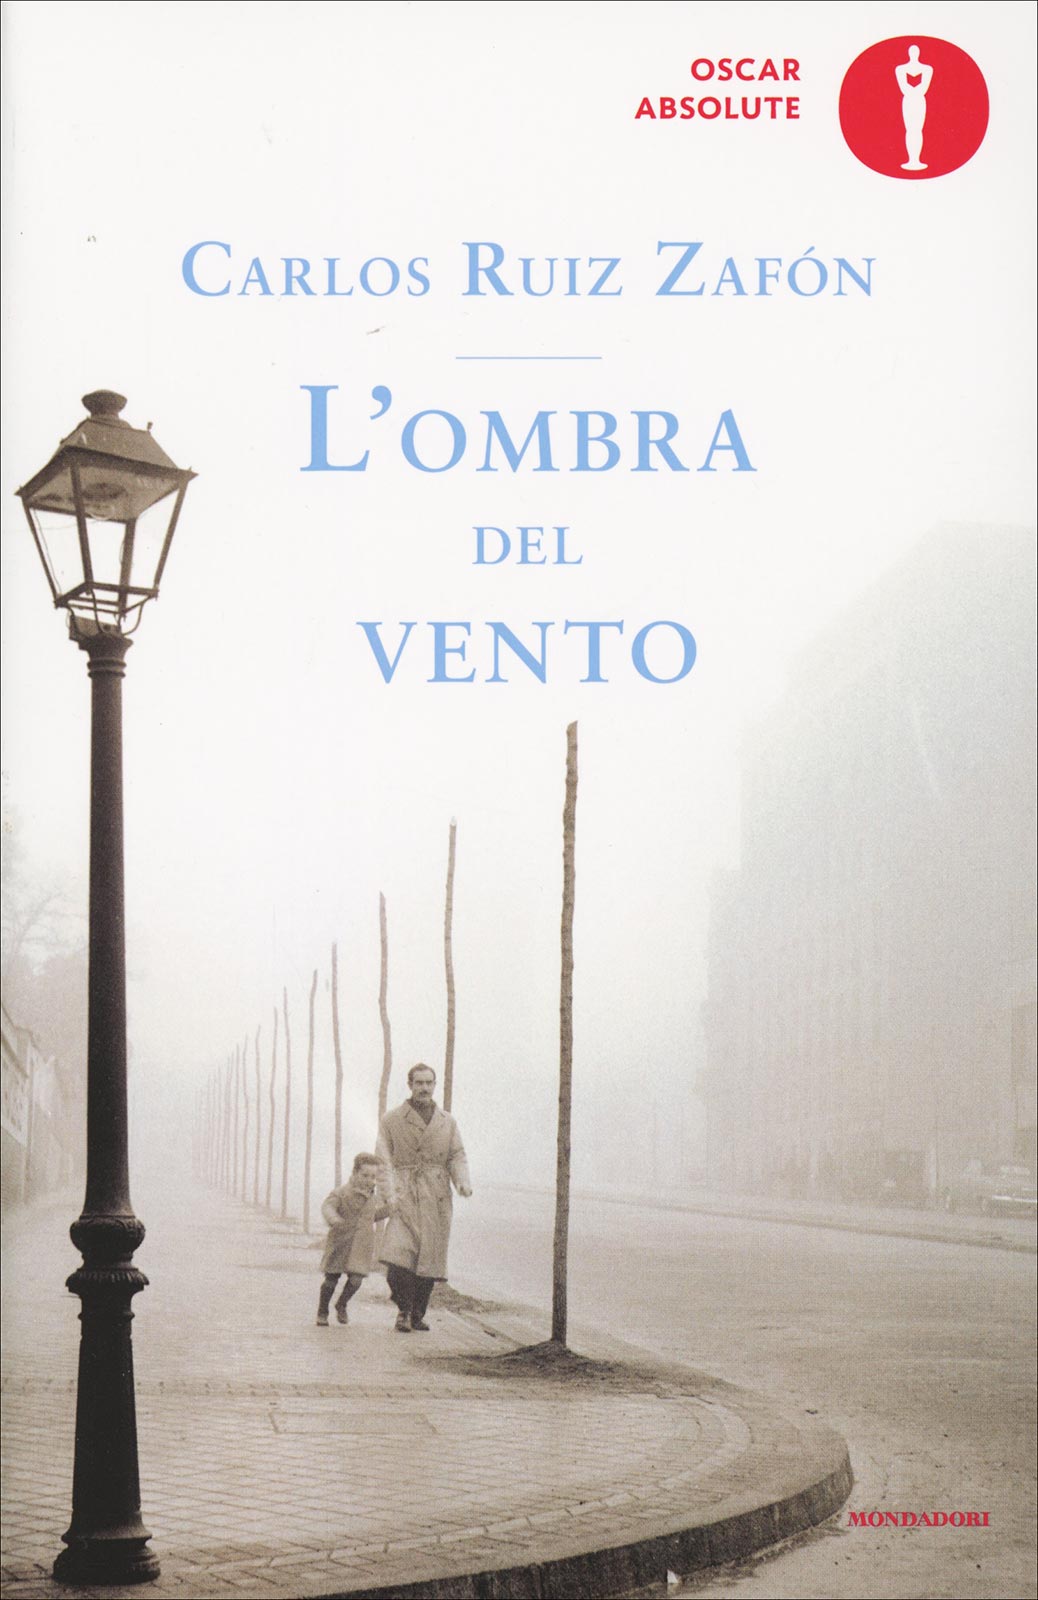 Carlos Ruiz Zafón –  L’Ombra del vento